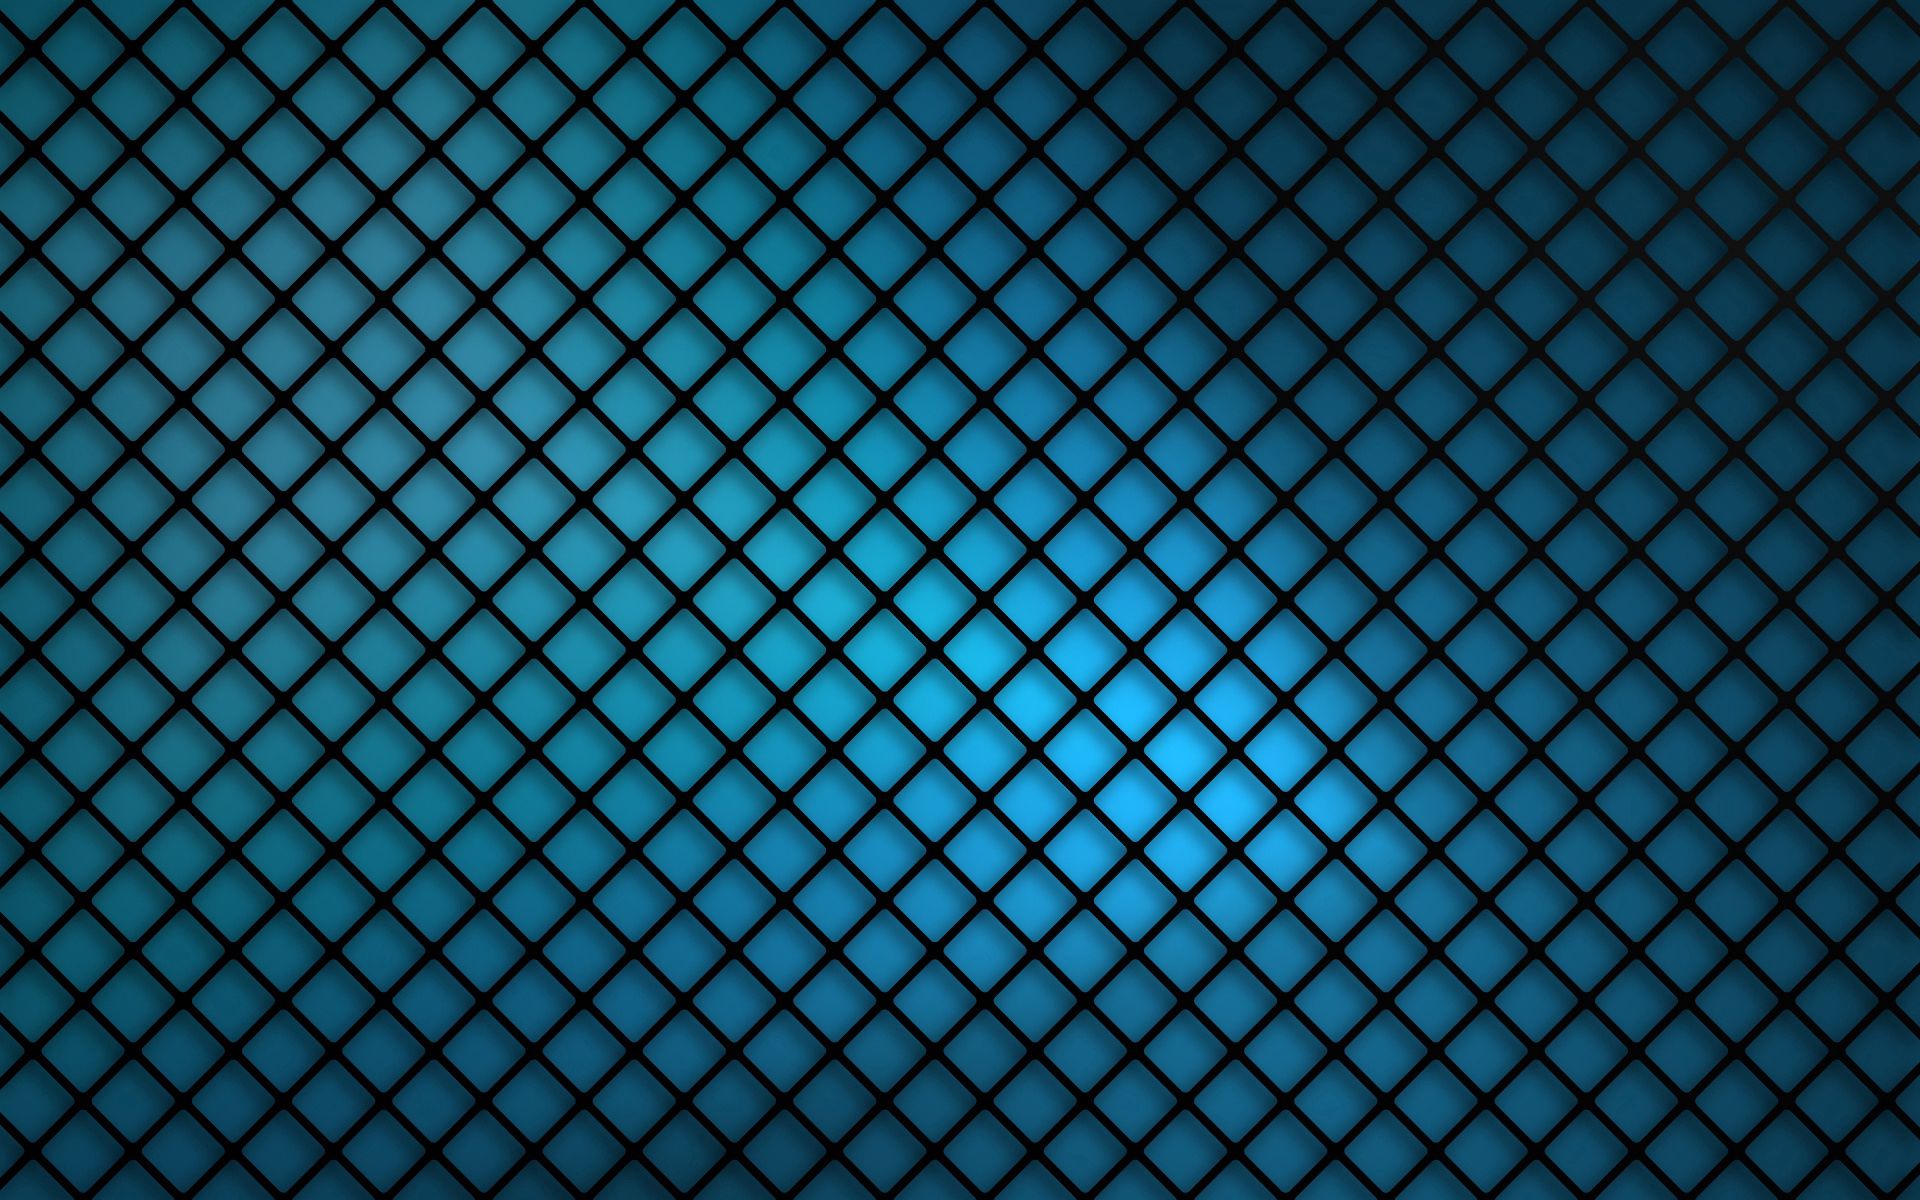 grid, textures, background, dark, shine, light, texture, surface 32K